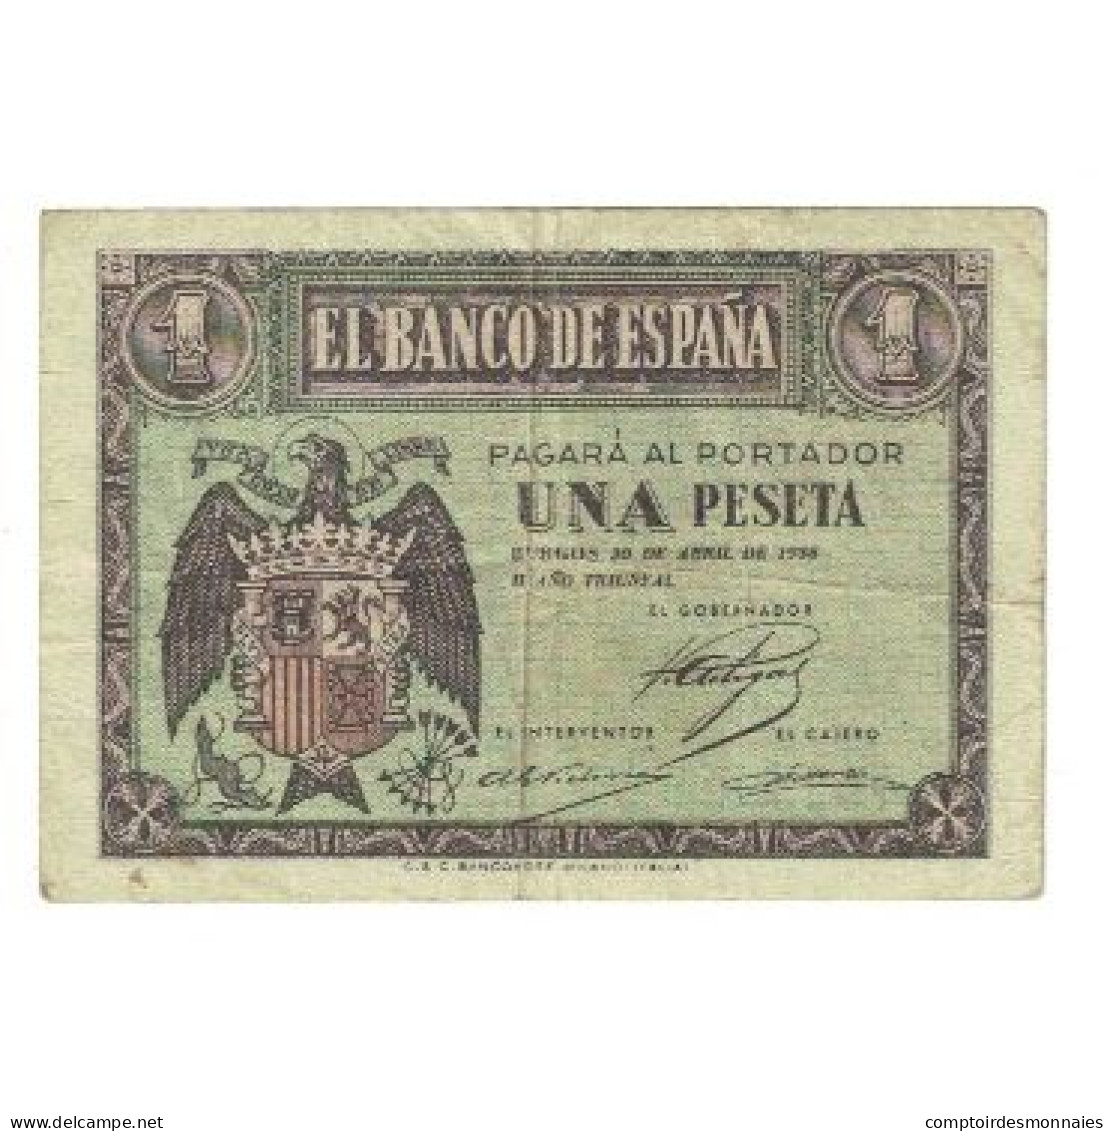 Billet, Espagne, 1 Peseta, 1938, 1938-04-30, KM:107a, TTB - 1-2 Peseten